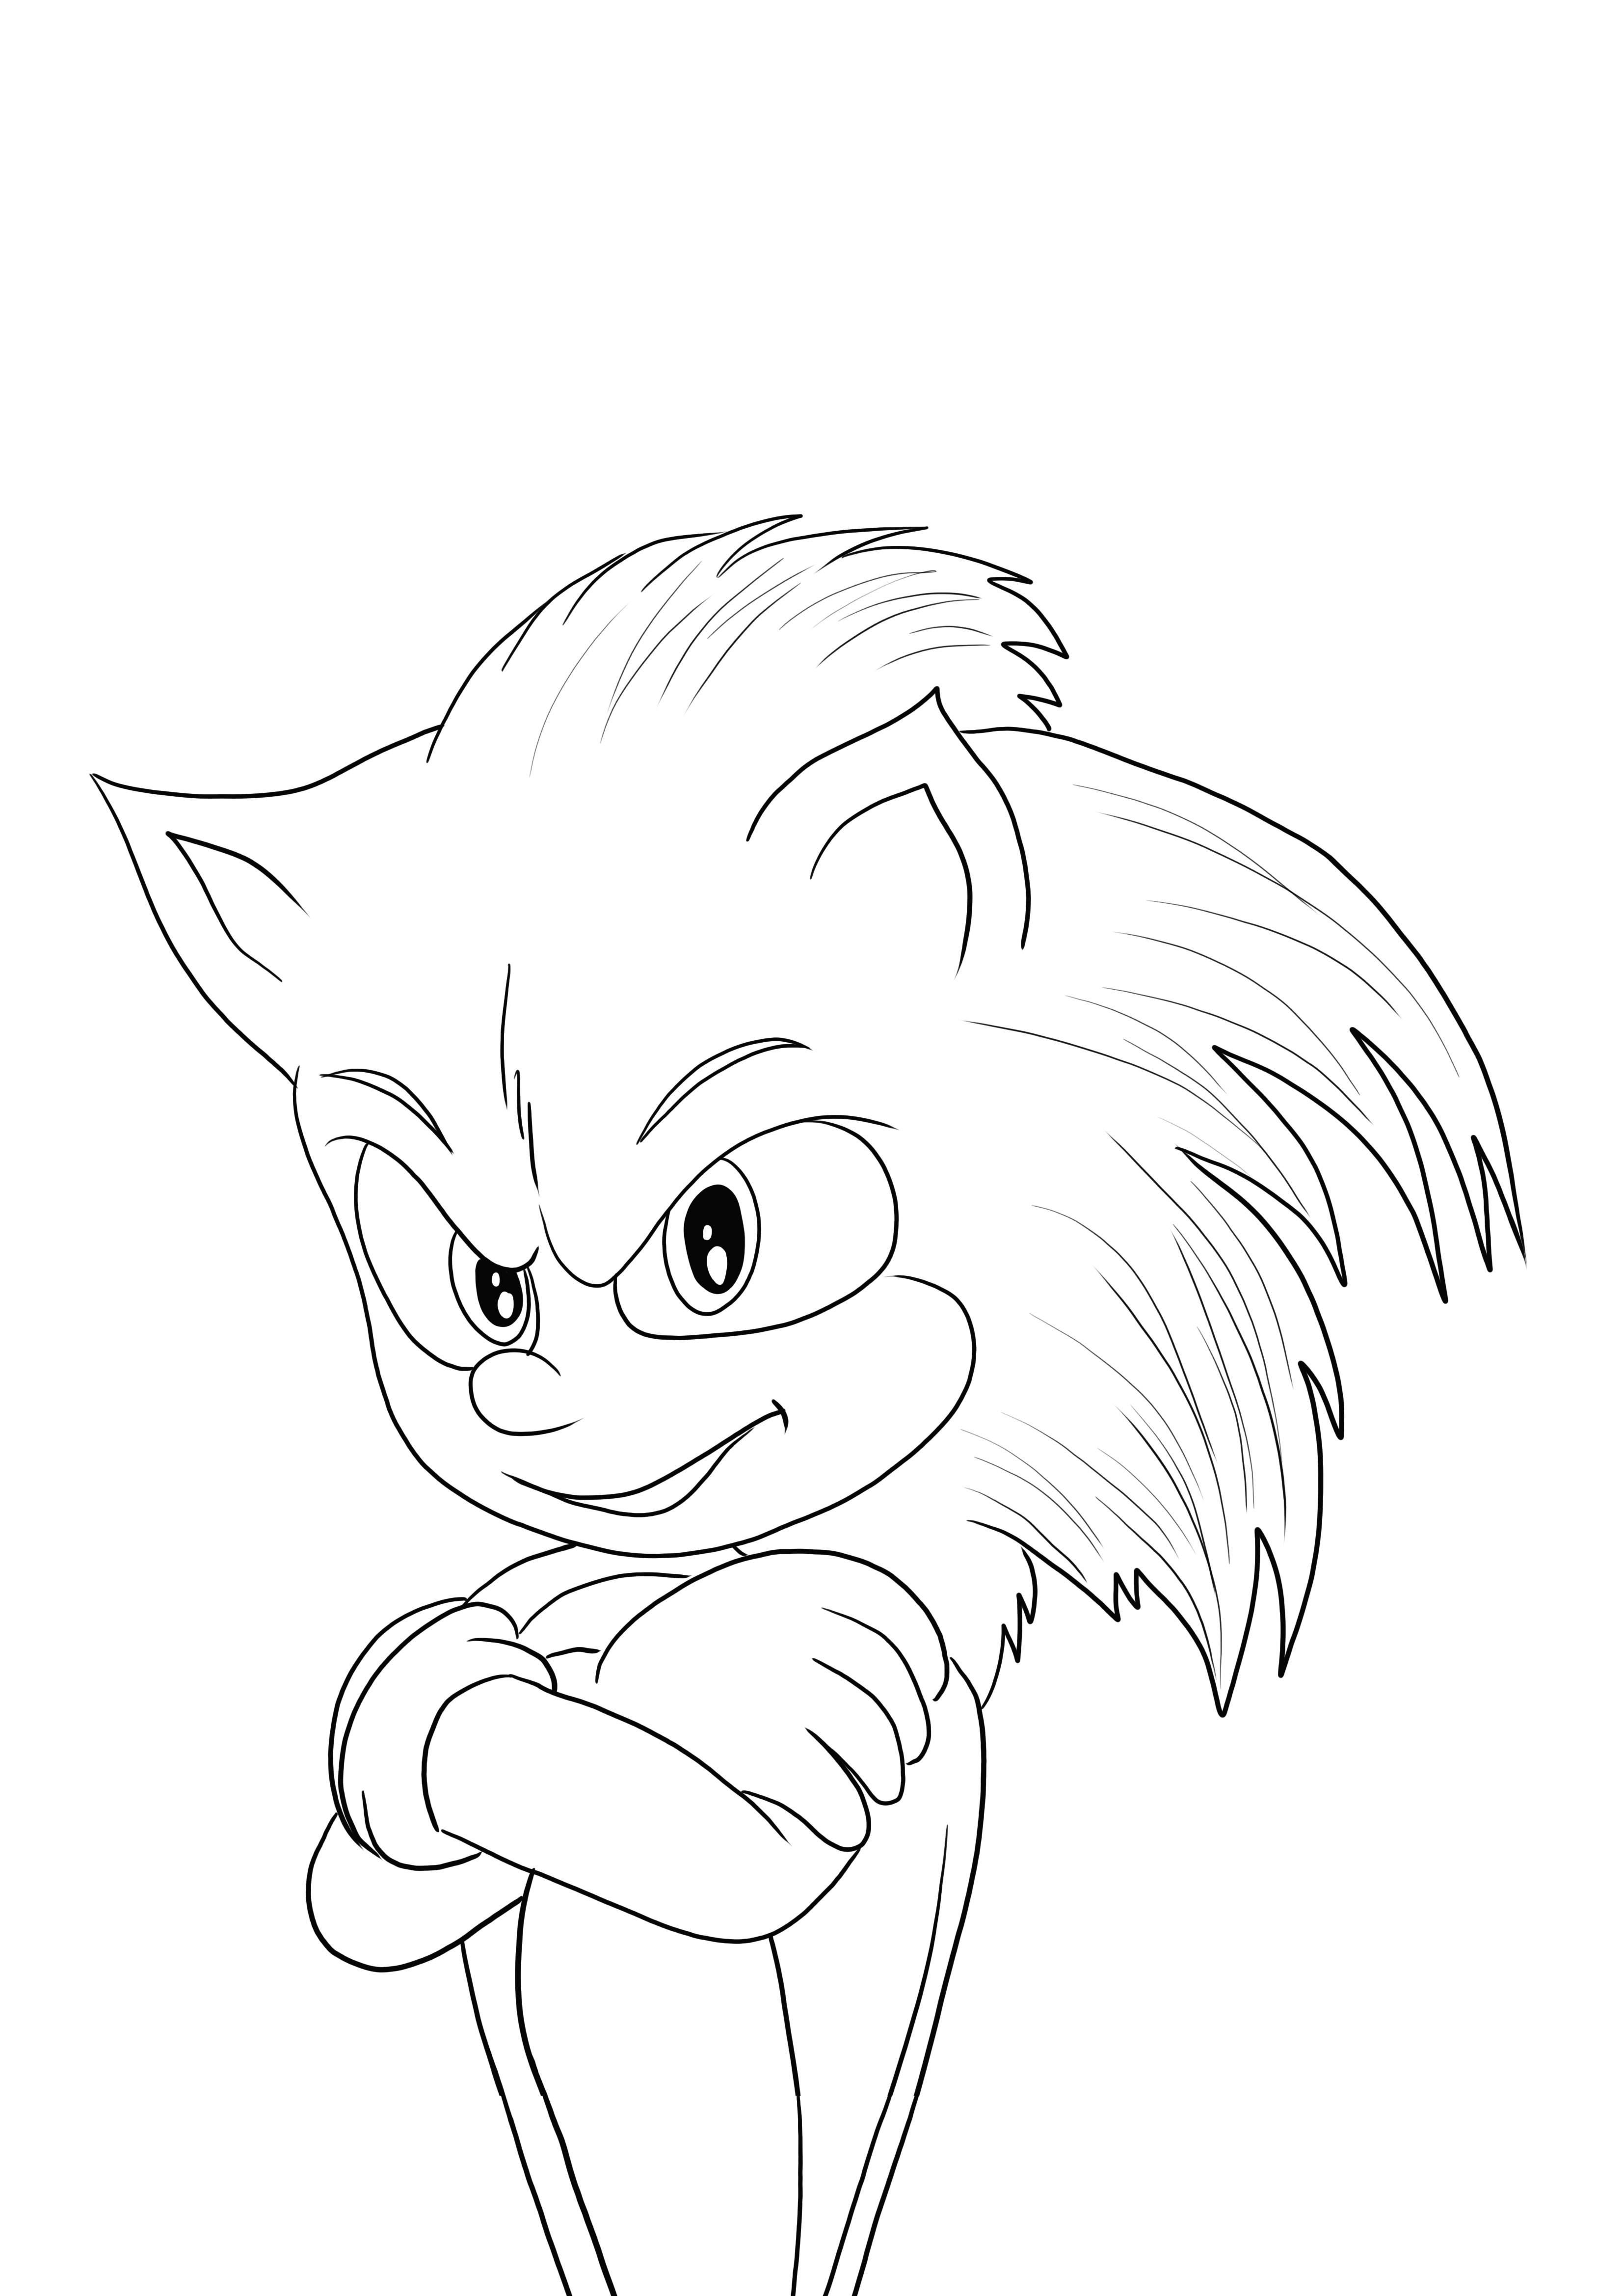 Notre cadeau de Sonic est prêt à être imprimé et facilement colorié par tous les amoureux de Sonic